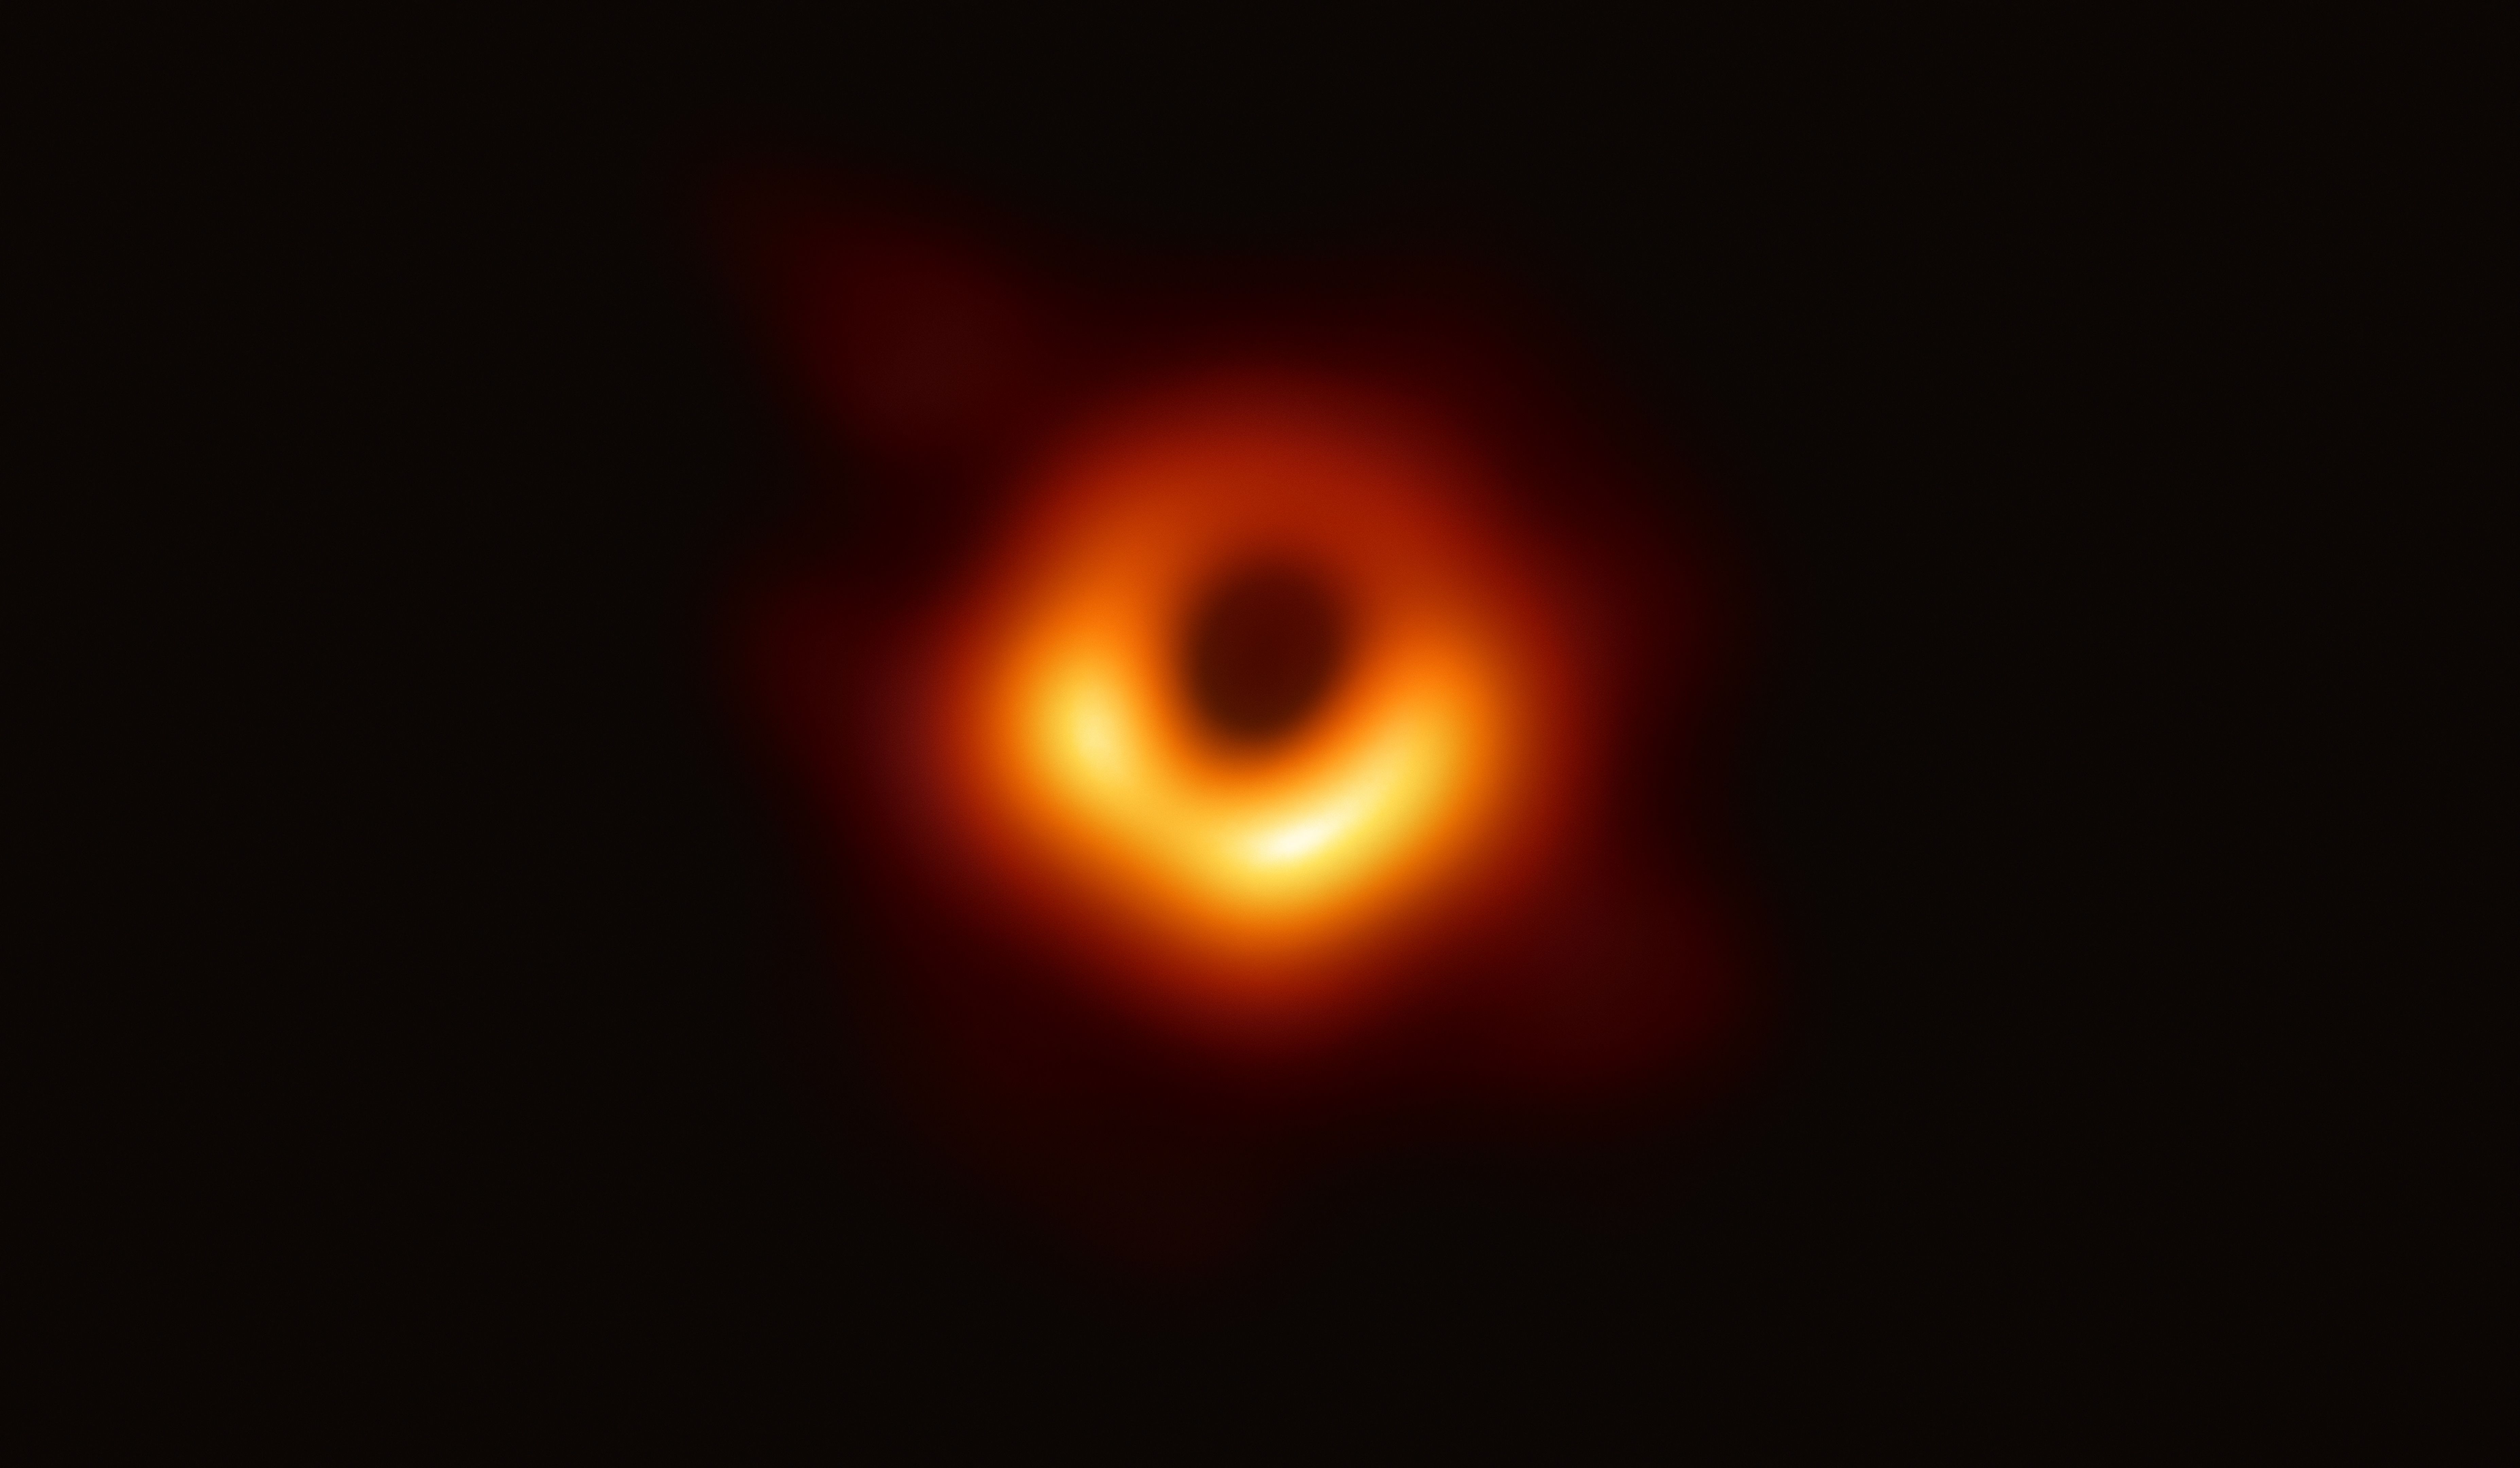 اولین تصویر واقعی از سیاه چاله فضایی با کیفیت 4k